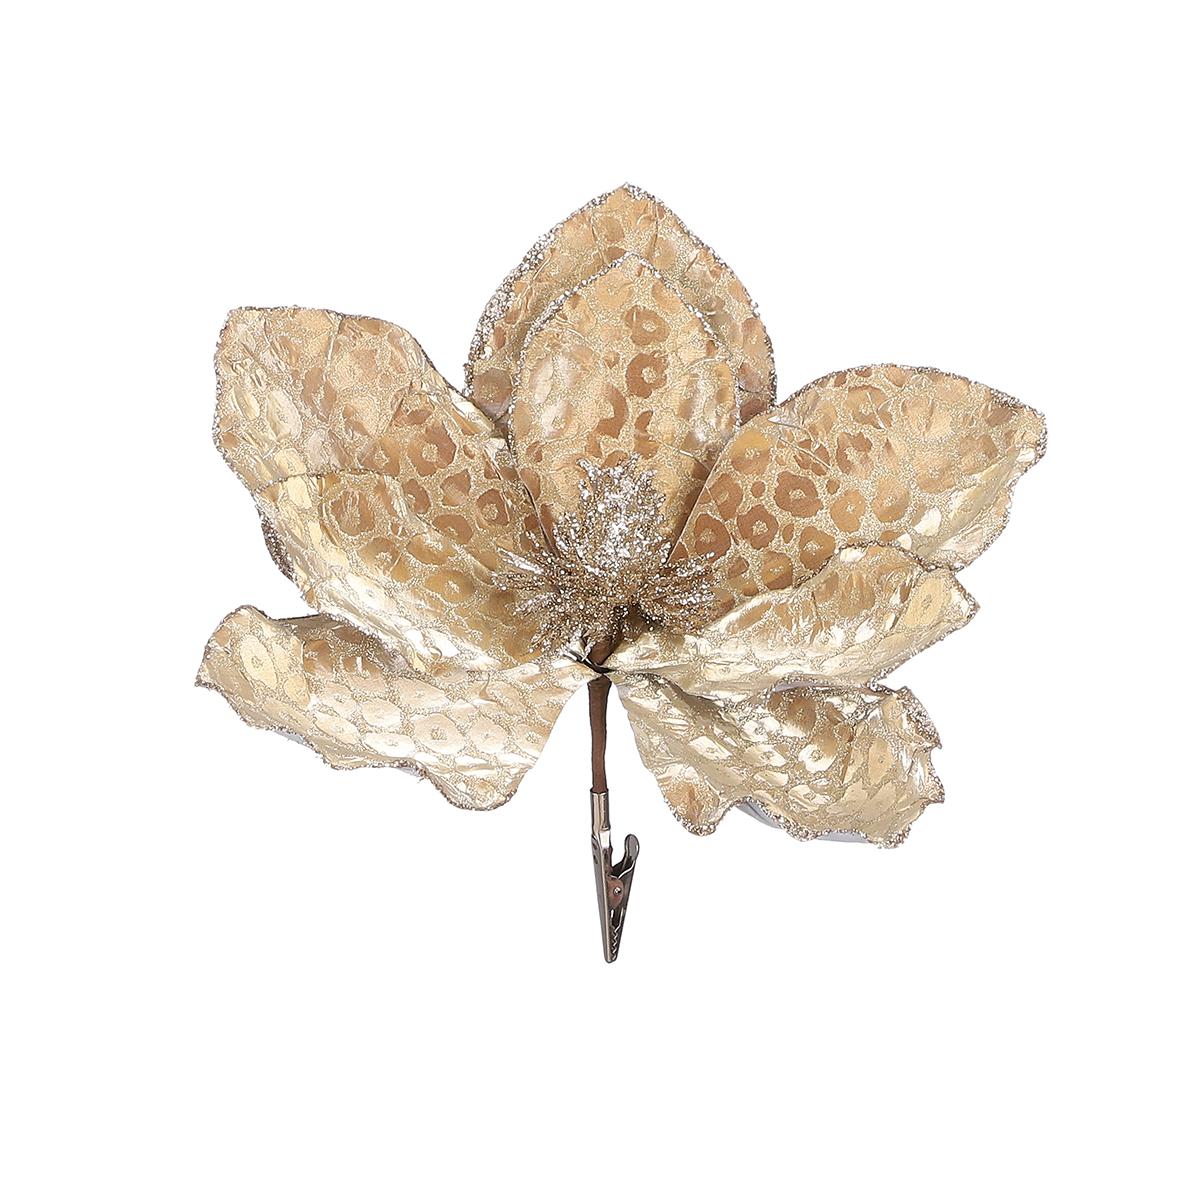 Selected image for EDELMAN Ukras cvet magnolije šampanj